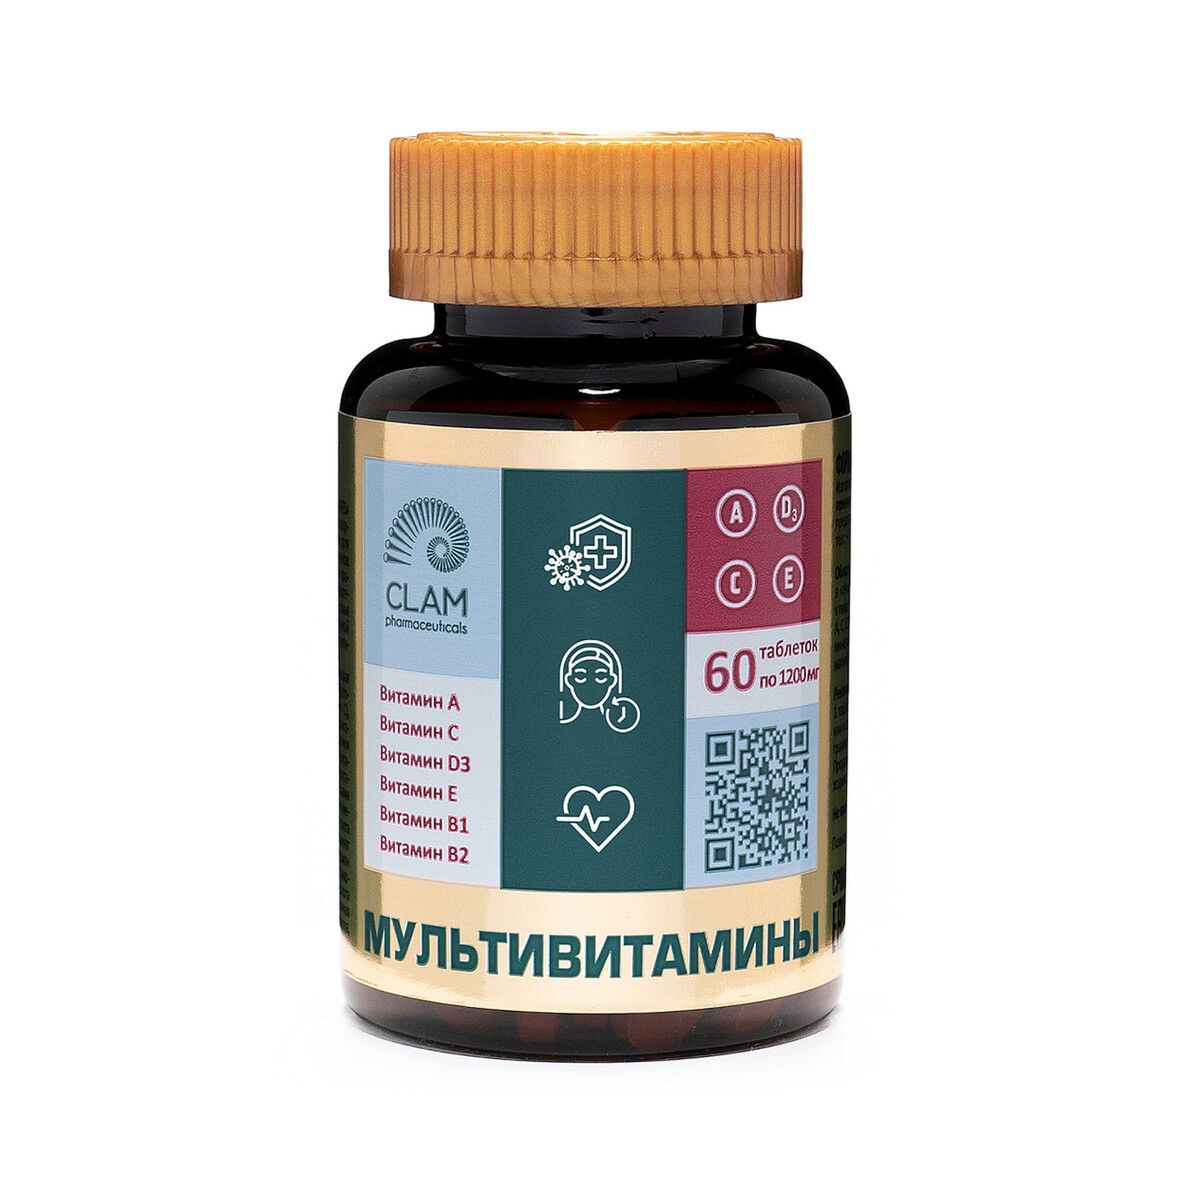 Мультивитамины - ANTI AGE, источник витаминов и минералов - комплекс для иммунитета, молодости и красоты - 60 капсул